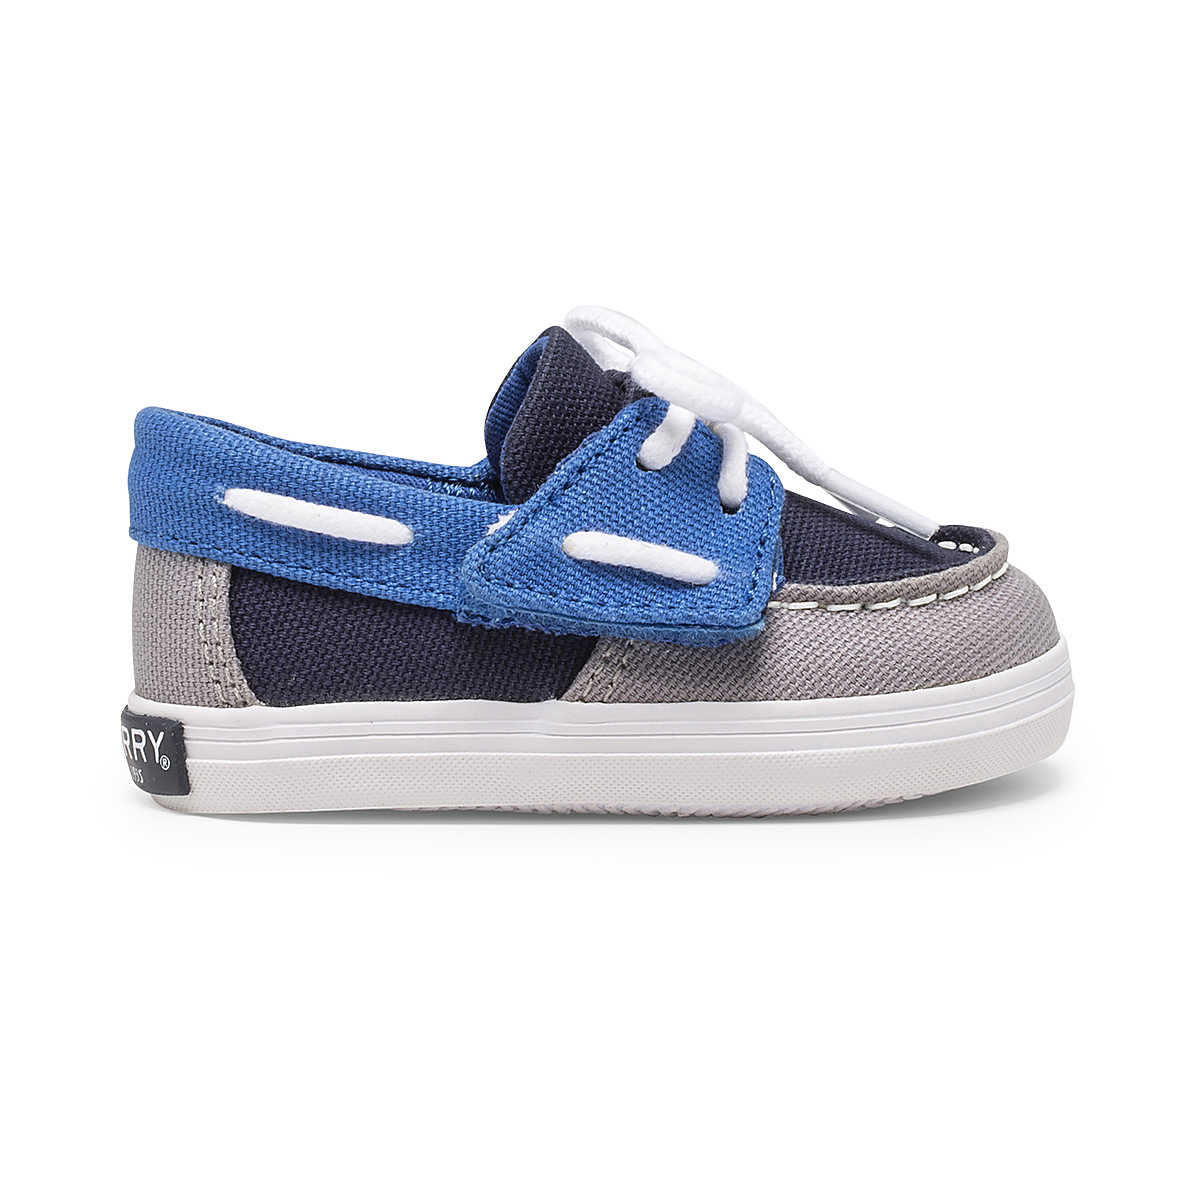 Intrepid Crib Boat Shoe, Grey/Blue, dynamic 1